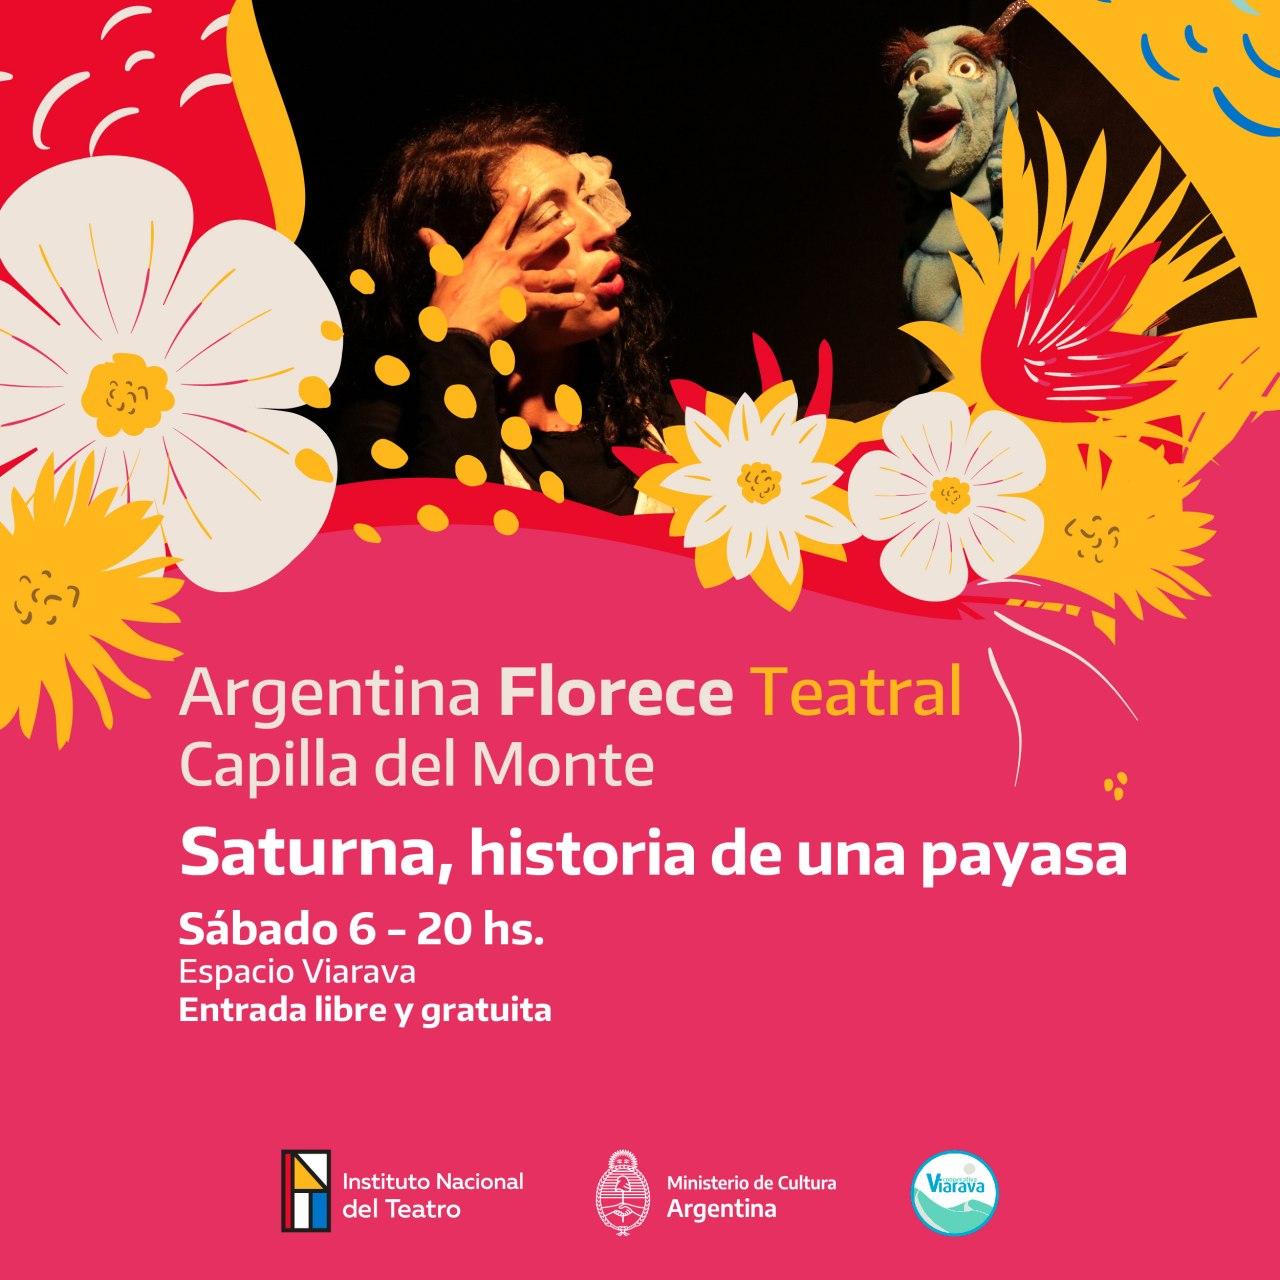 Argentina Florece: Saturna llega a Espacio Viarava con un espectáculo gratuito